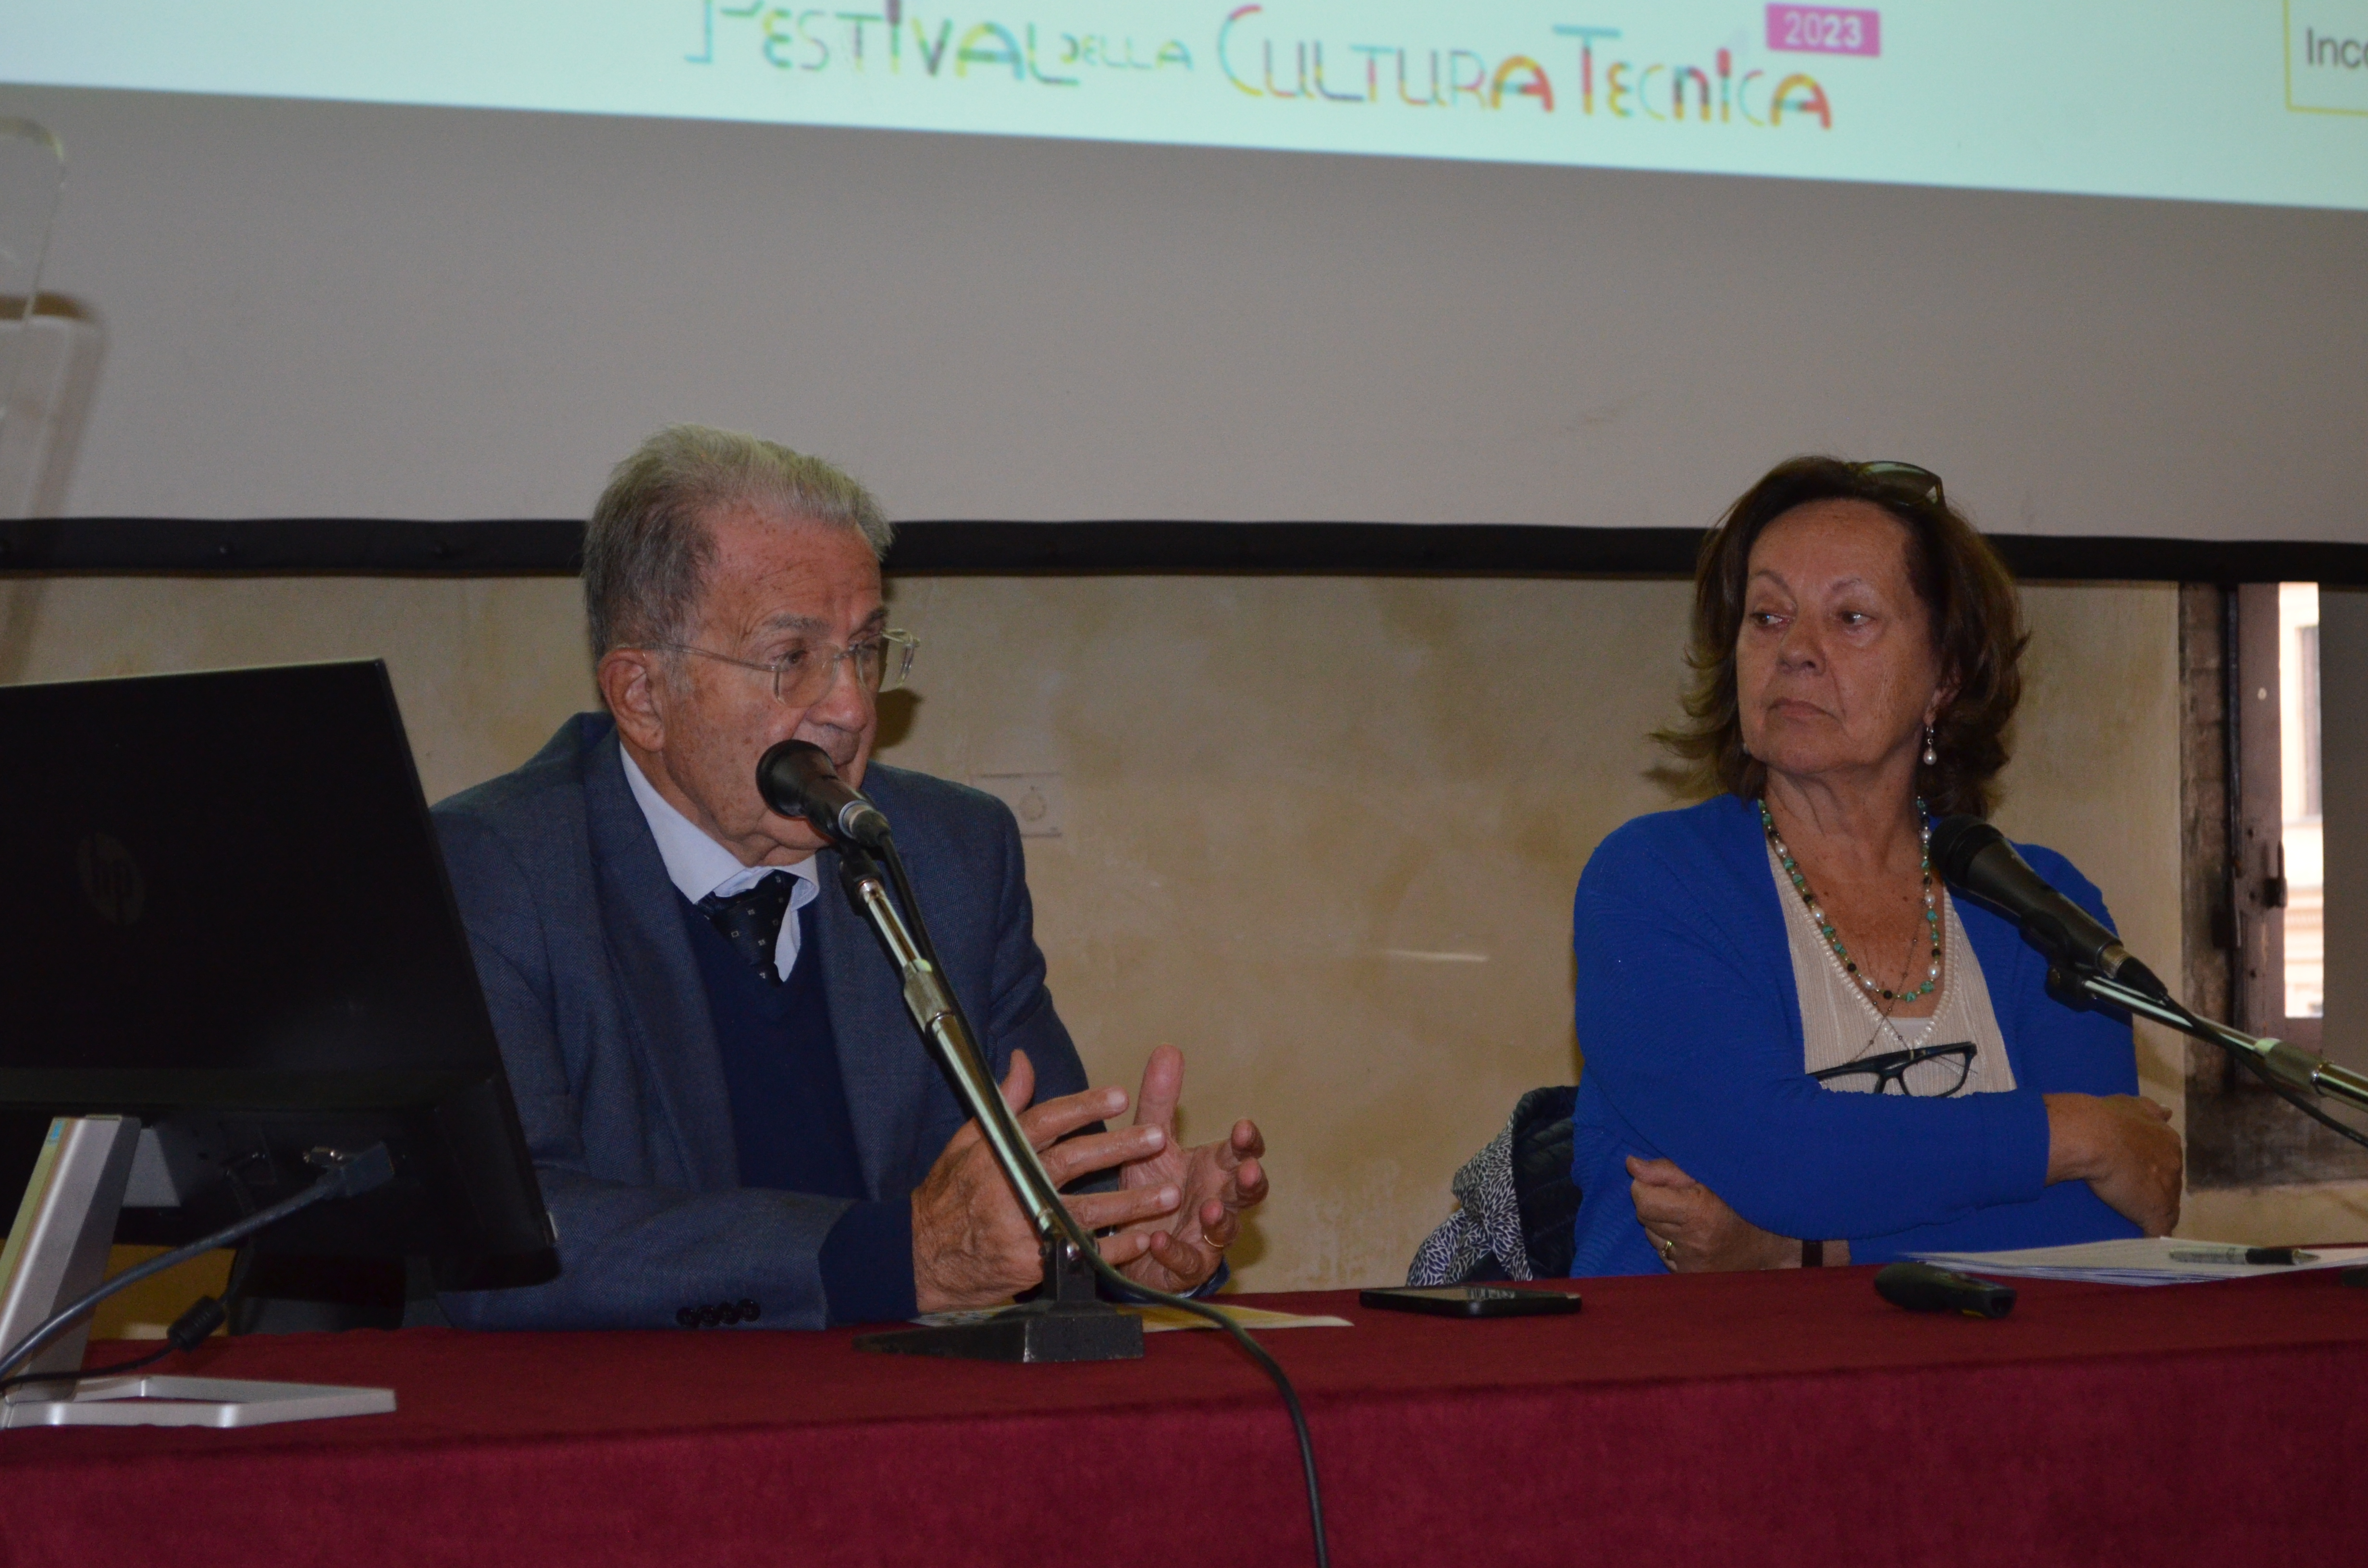 Romano-Prodi-Festival-Cultura-tecnica-2023-Bologna